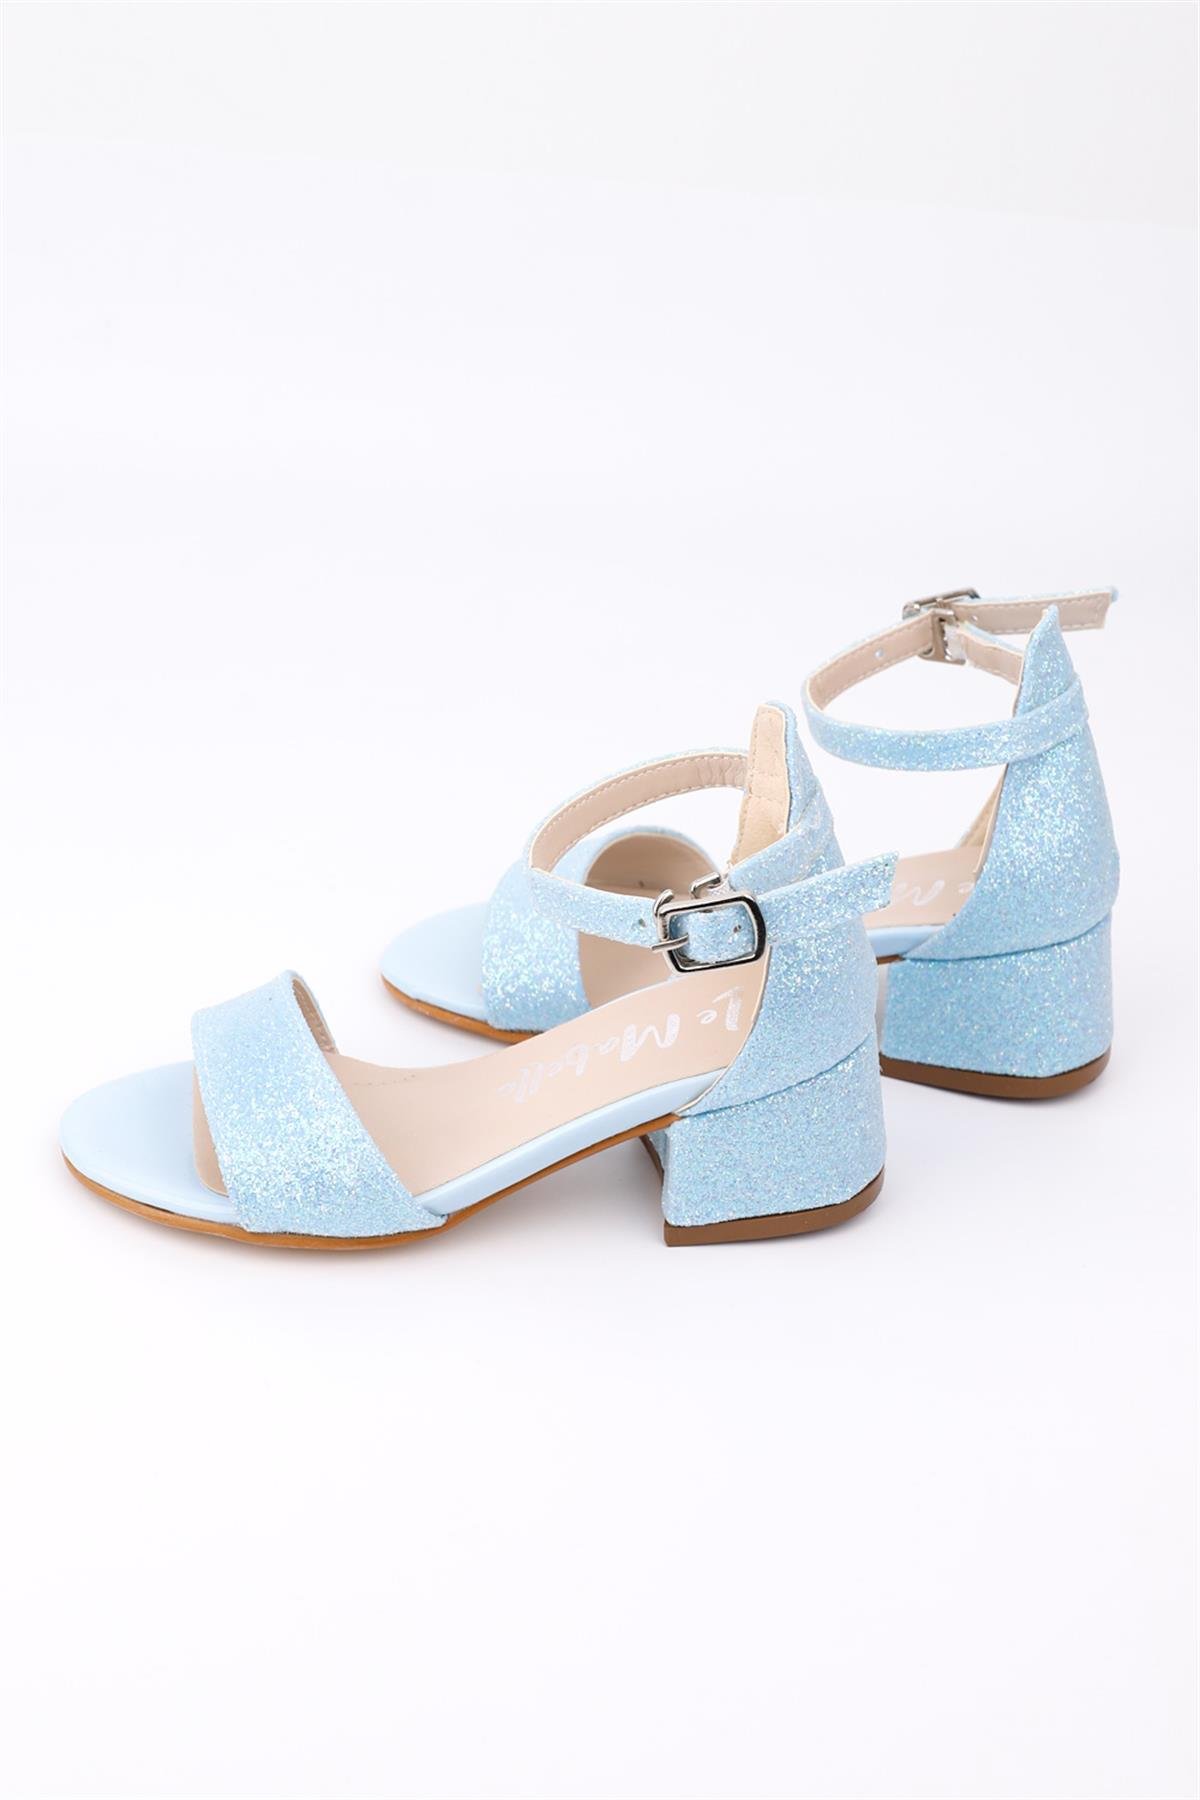 Mavi Simli Topuklu Kız Çocuk AyakkabıLM1136 | Le Mabelle